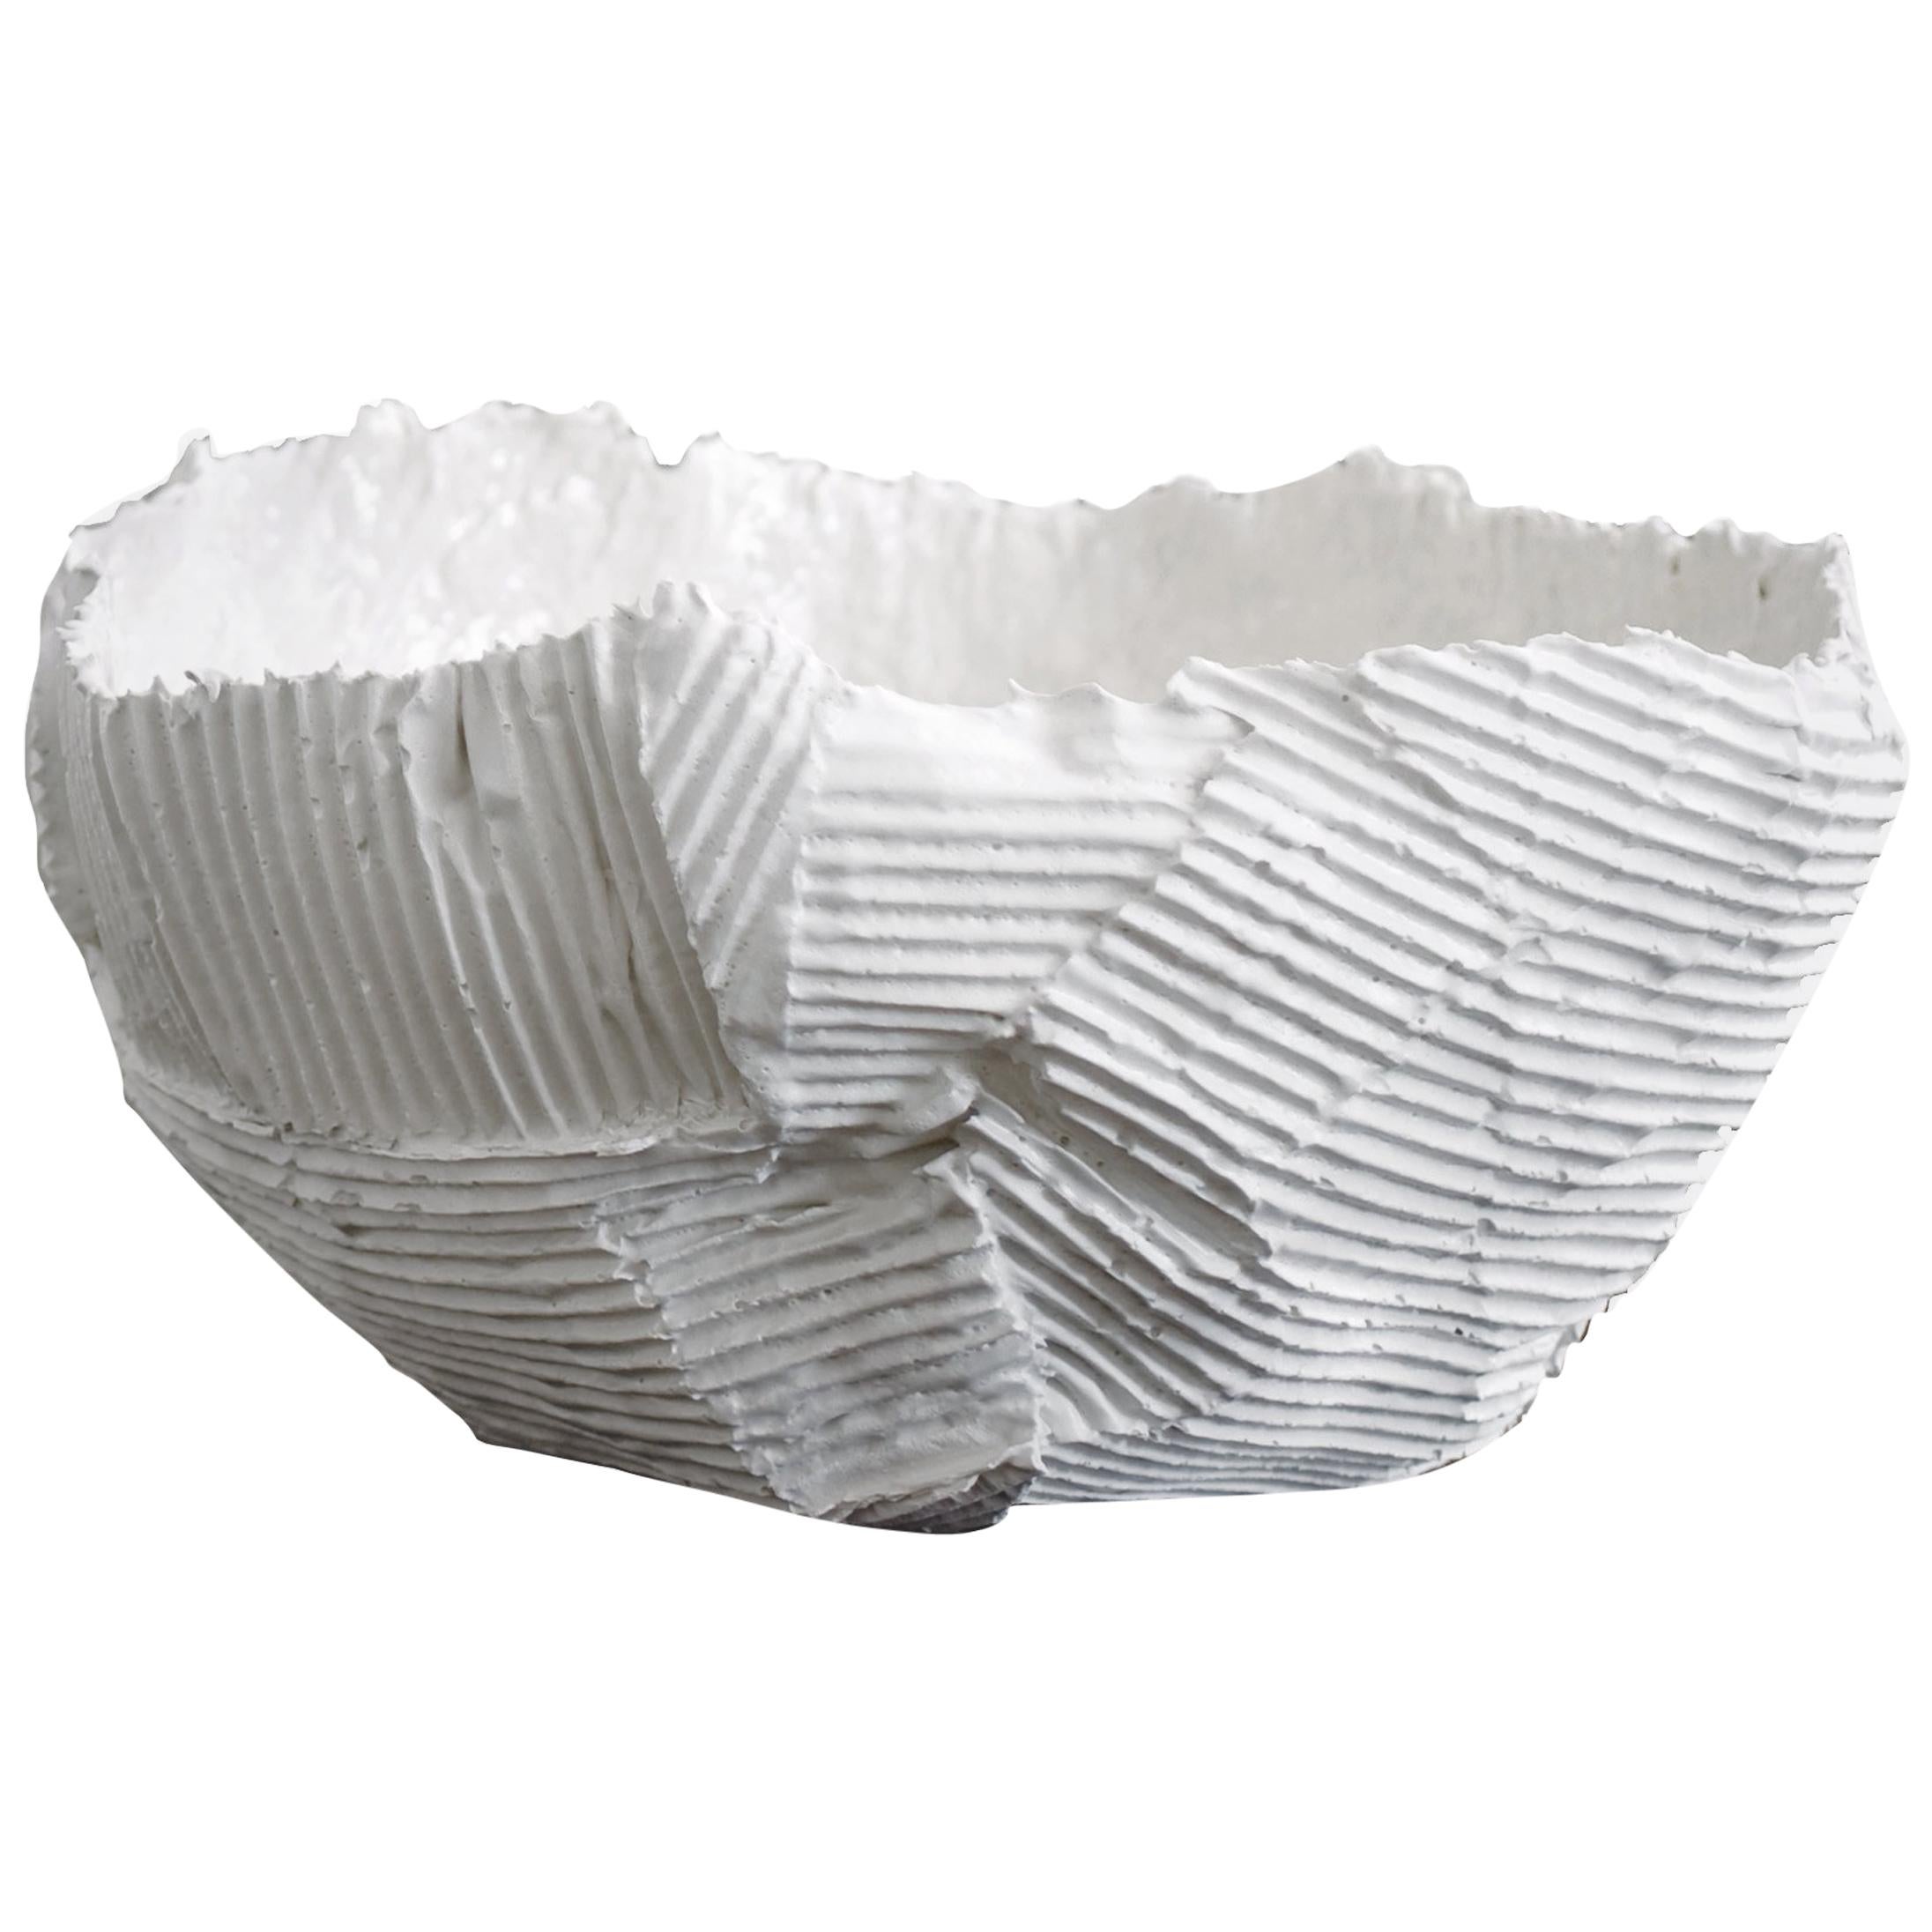 Bol blanc en céramique contemporaine à imprimé texturé Cartocci